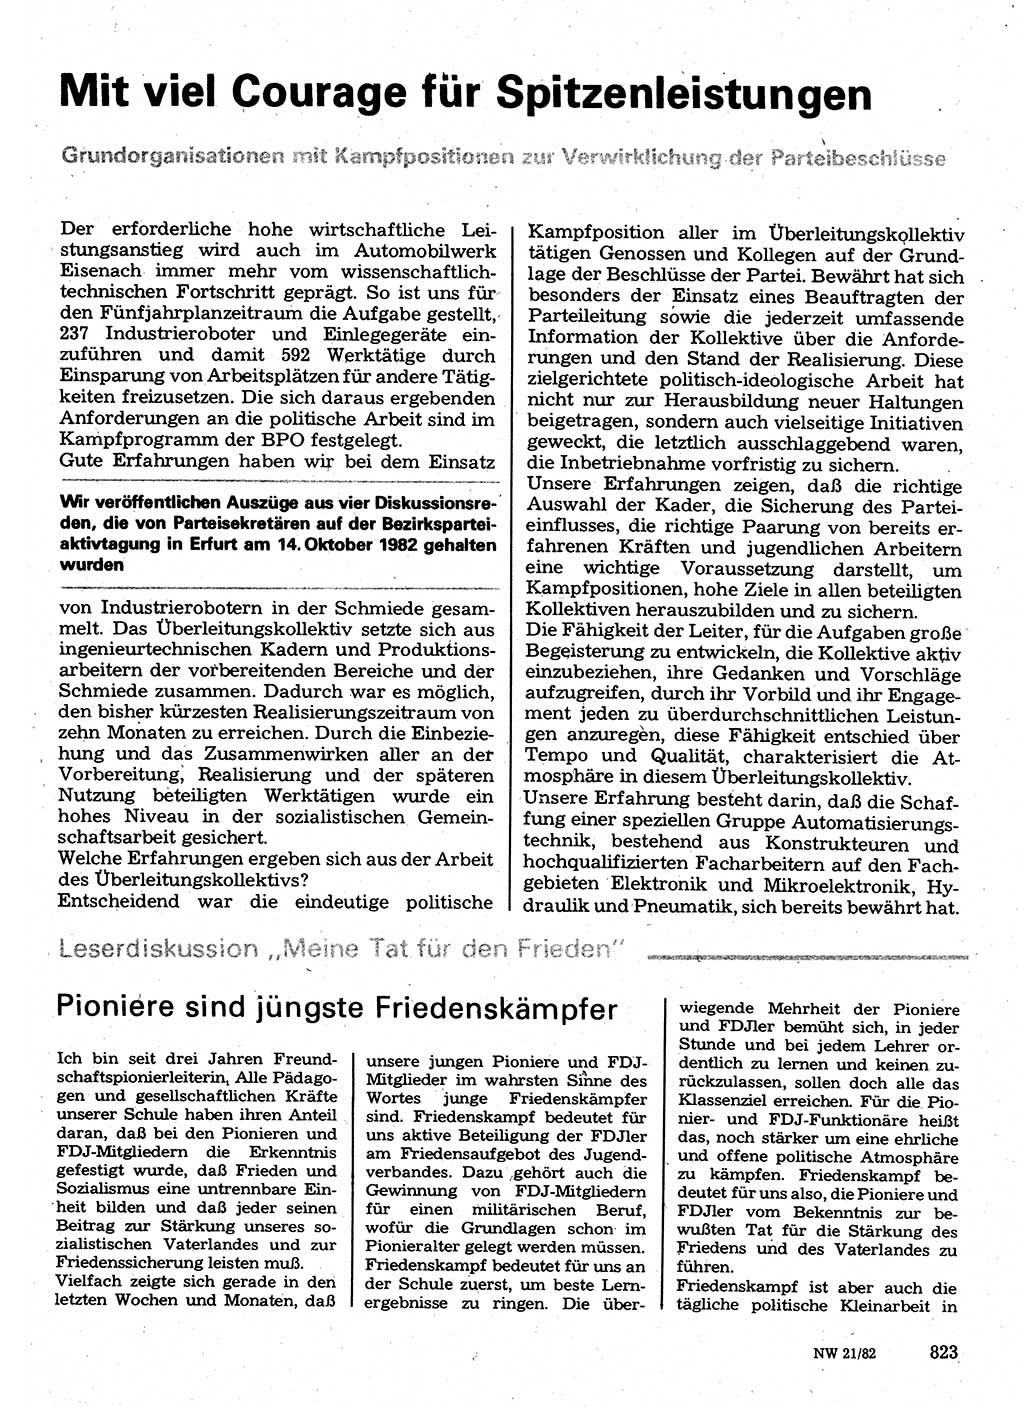 Neuer Weg (NW), Organ des Zentralkomitees (ZK) der SED (Sozialistische Einheitspartei Deutschlands) für Fragen des Parteilebens, 37. Jahrgang [Deutsche Demokratische Republik (DDR)] 1982, Seite 823 (NW ZK SED DDR 1982, S. 823)